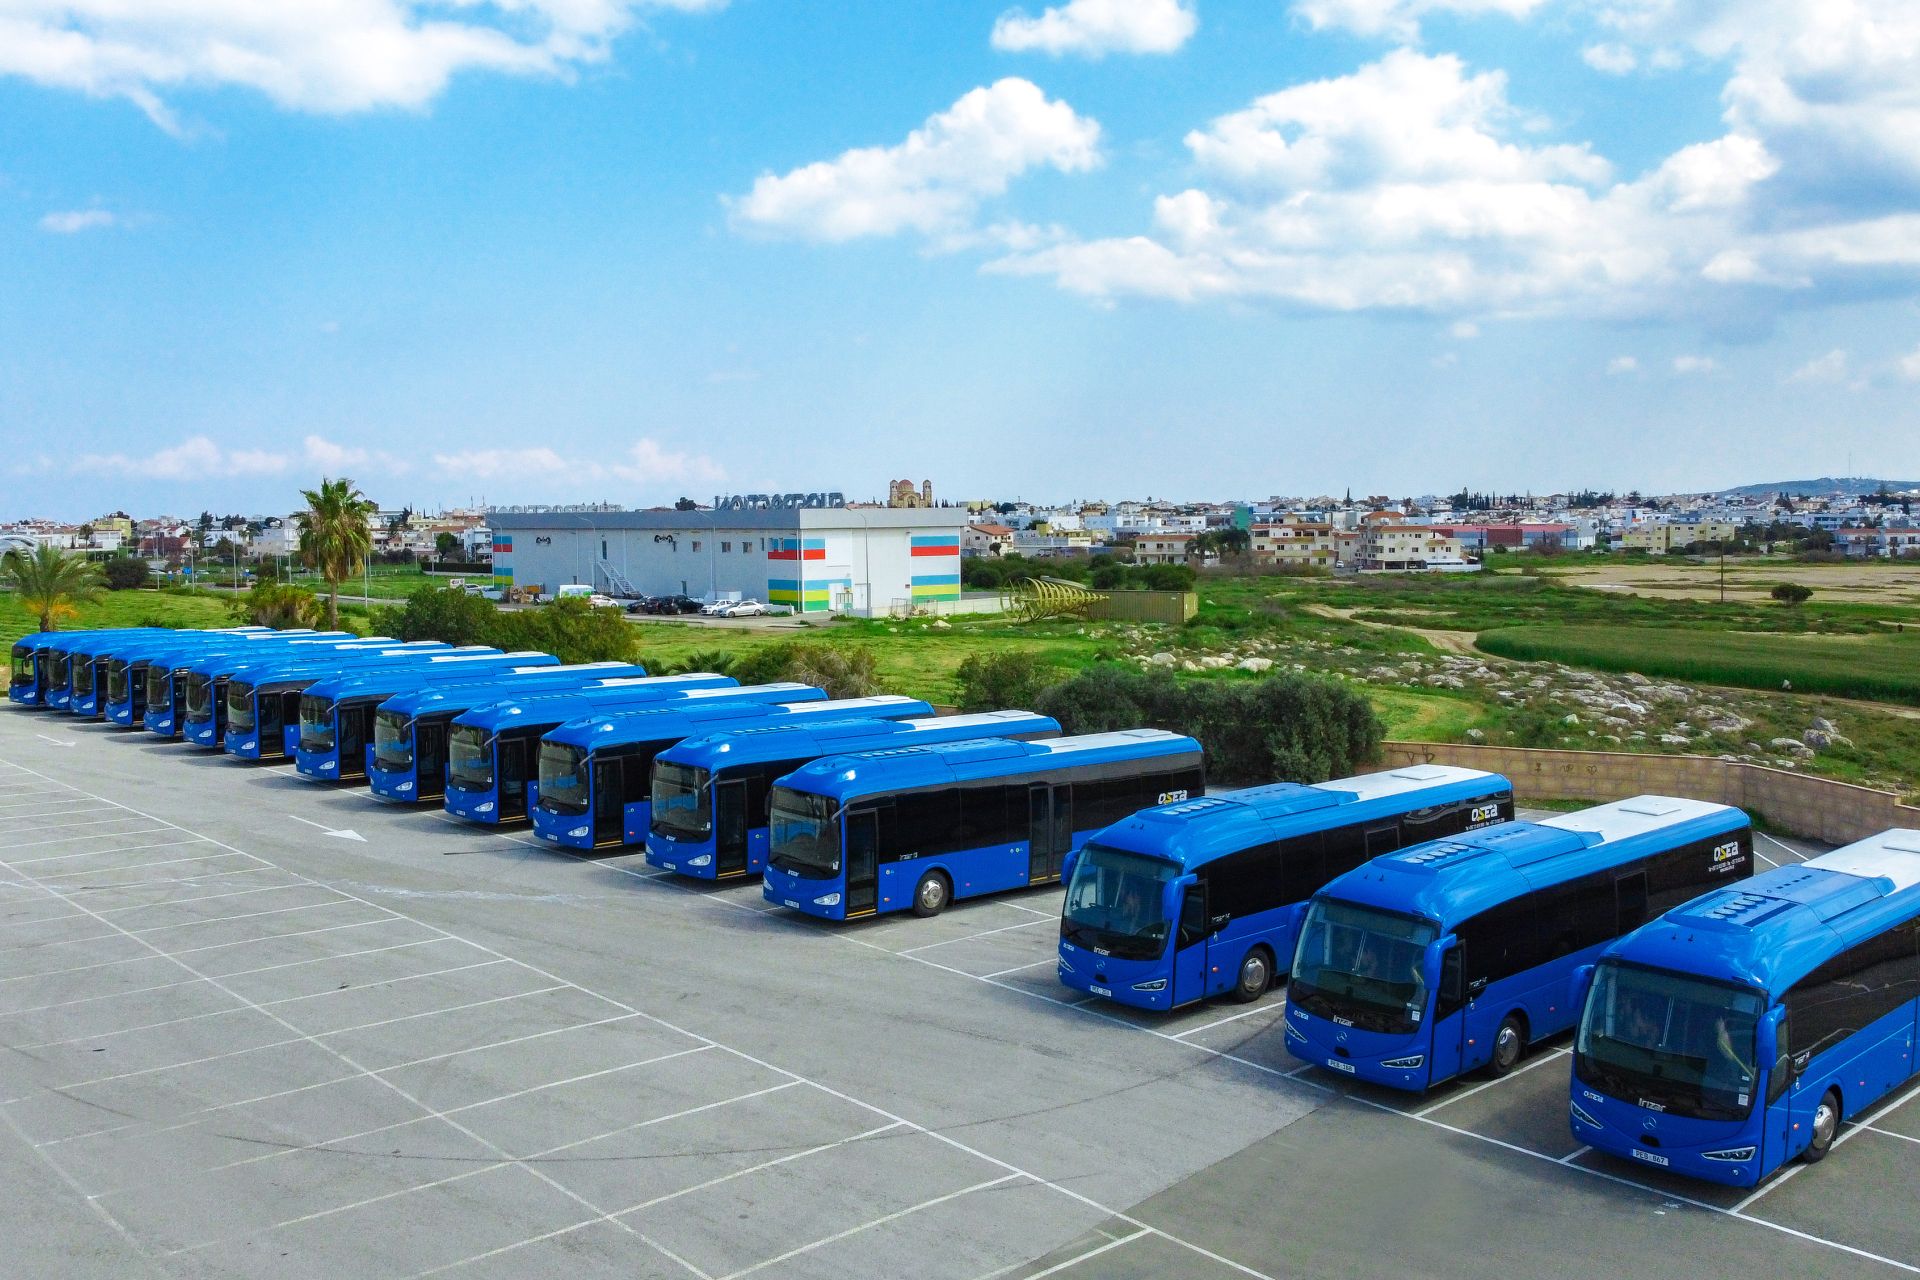 Les autocars Irizar conquièrent le Transport public de Chypre